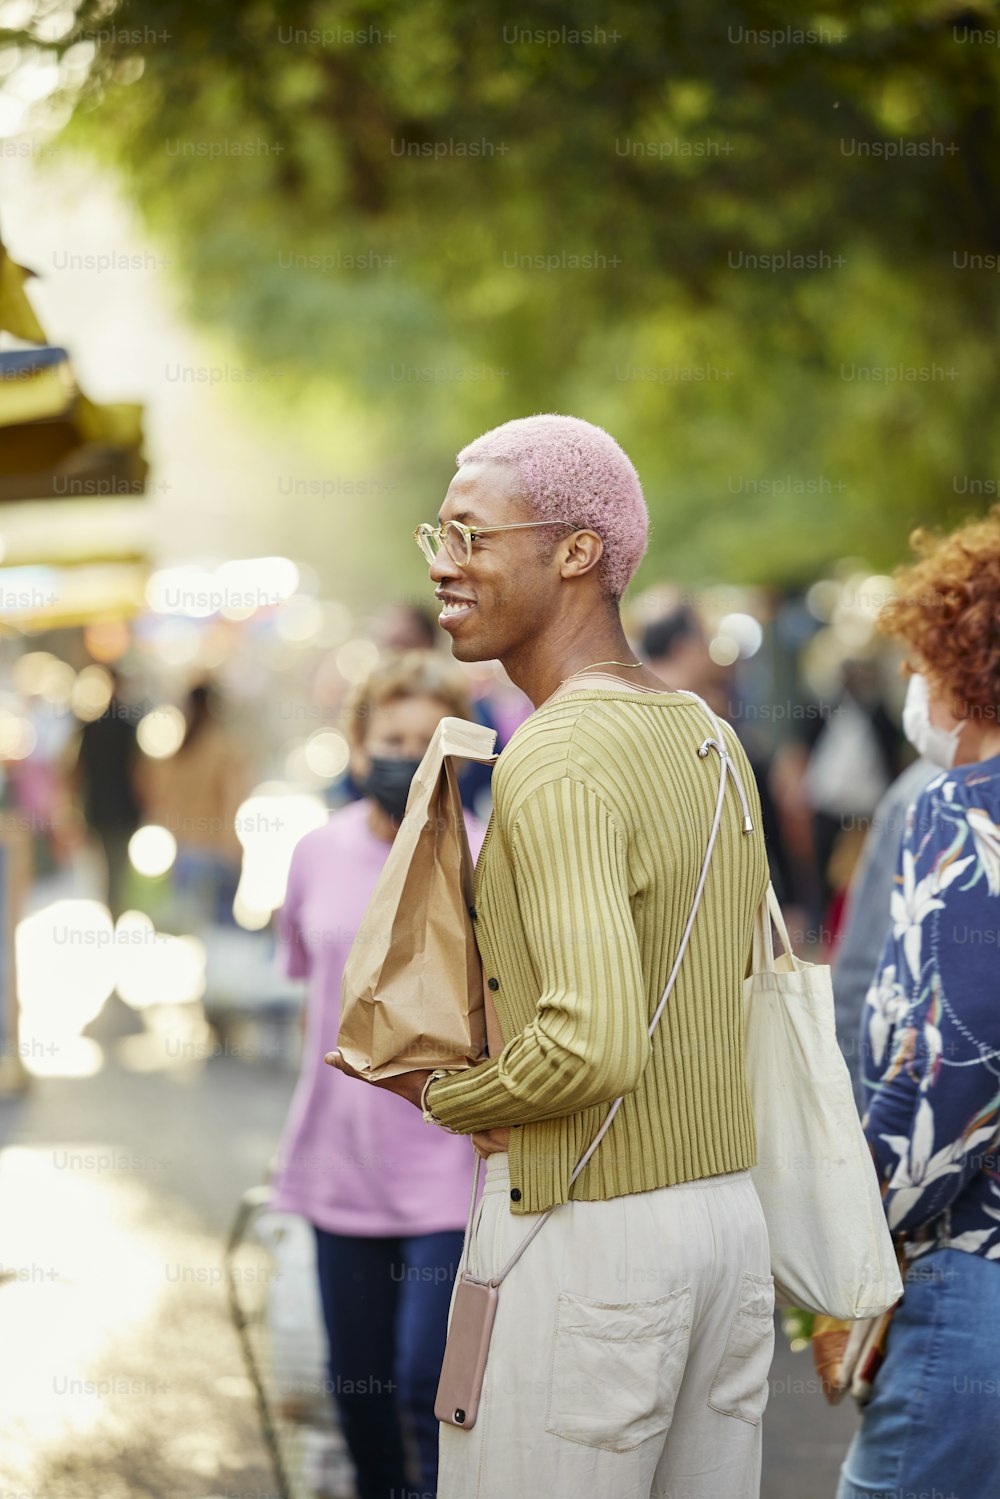 분홍색 모호크를 입은 남자가 거리에 서 있다